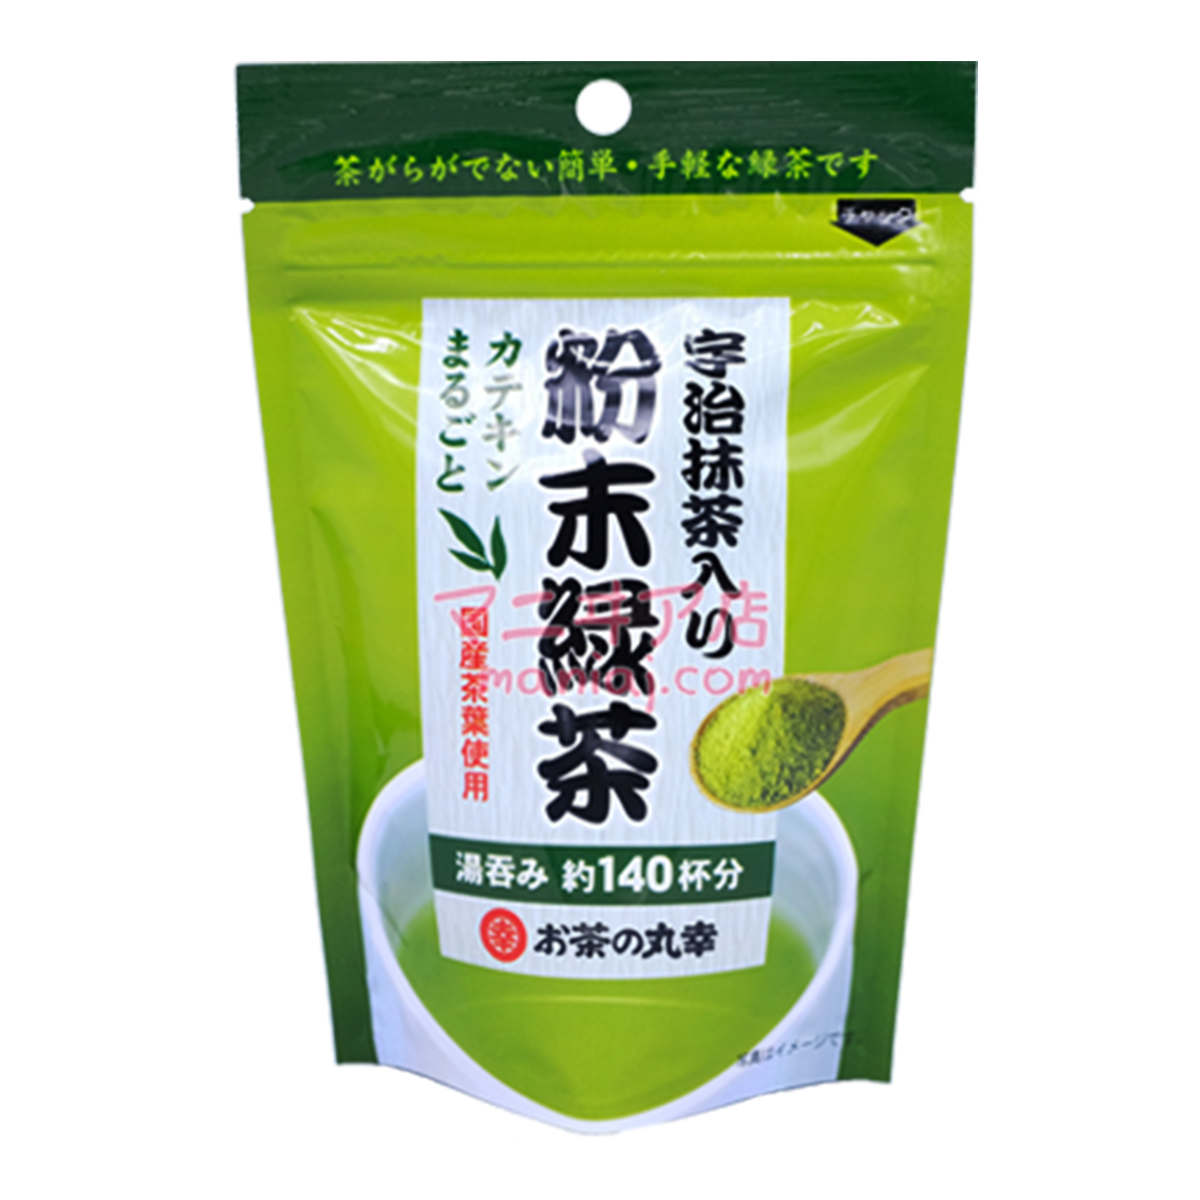 Cha no Maru Yuki Uji Matcha Green Tea Powder